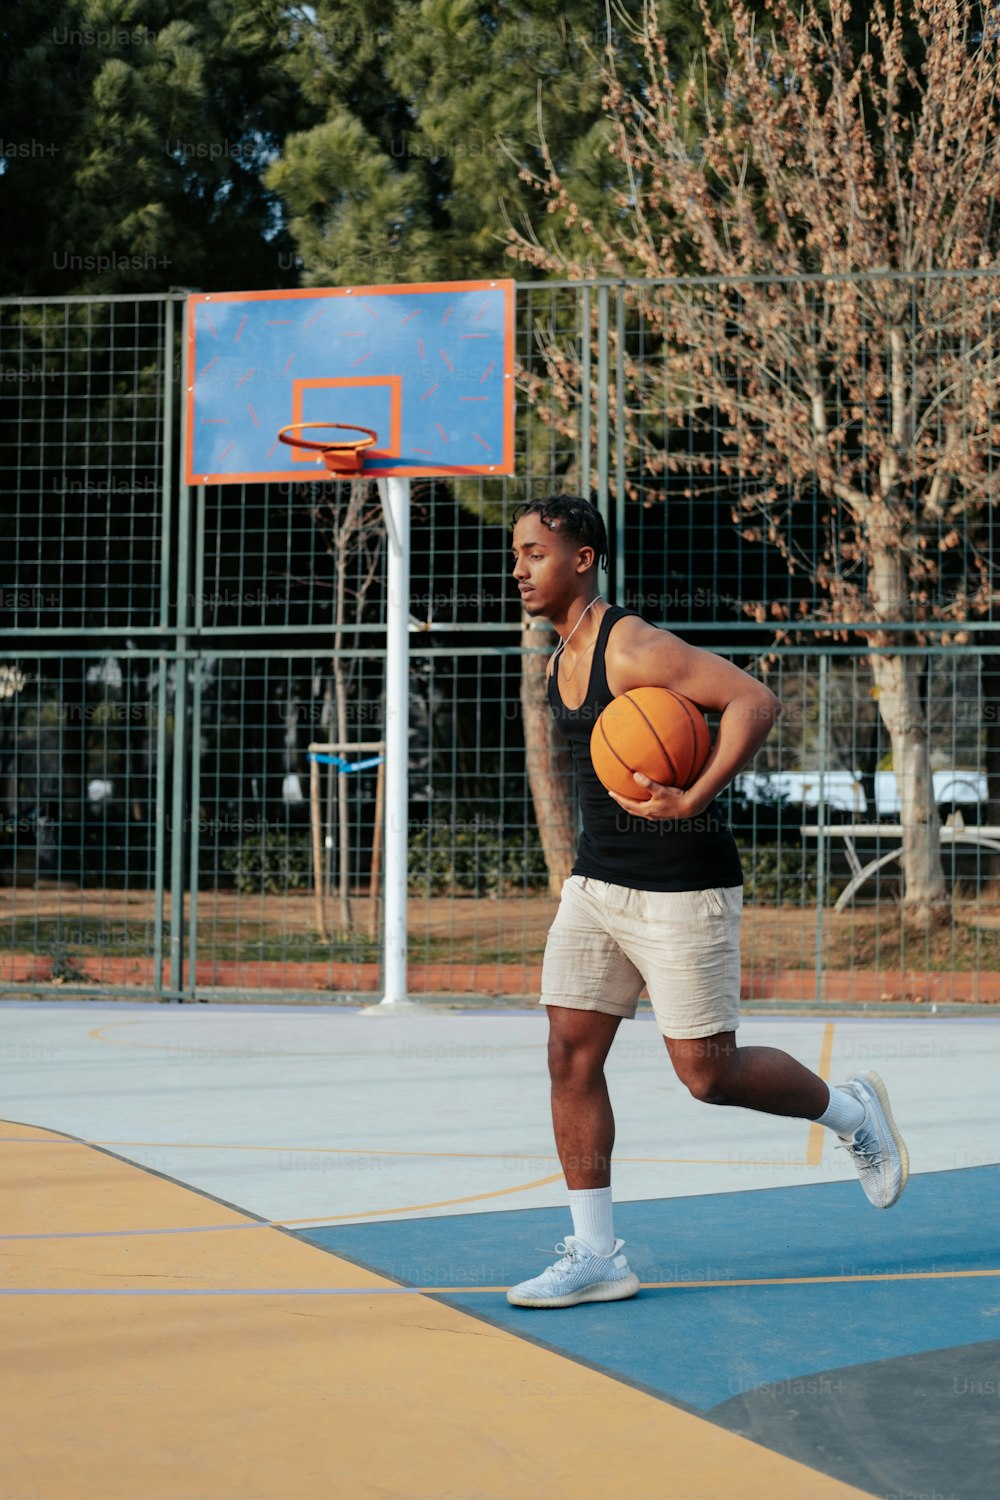 Un hombre sosteniendo una pelota de baloncesto encima de una cancha de baloncesto